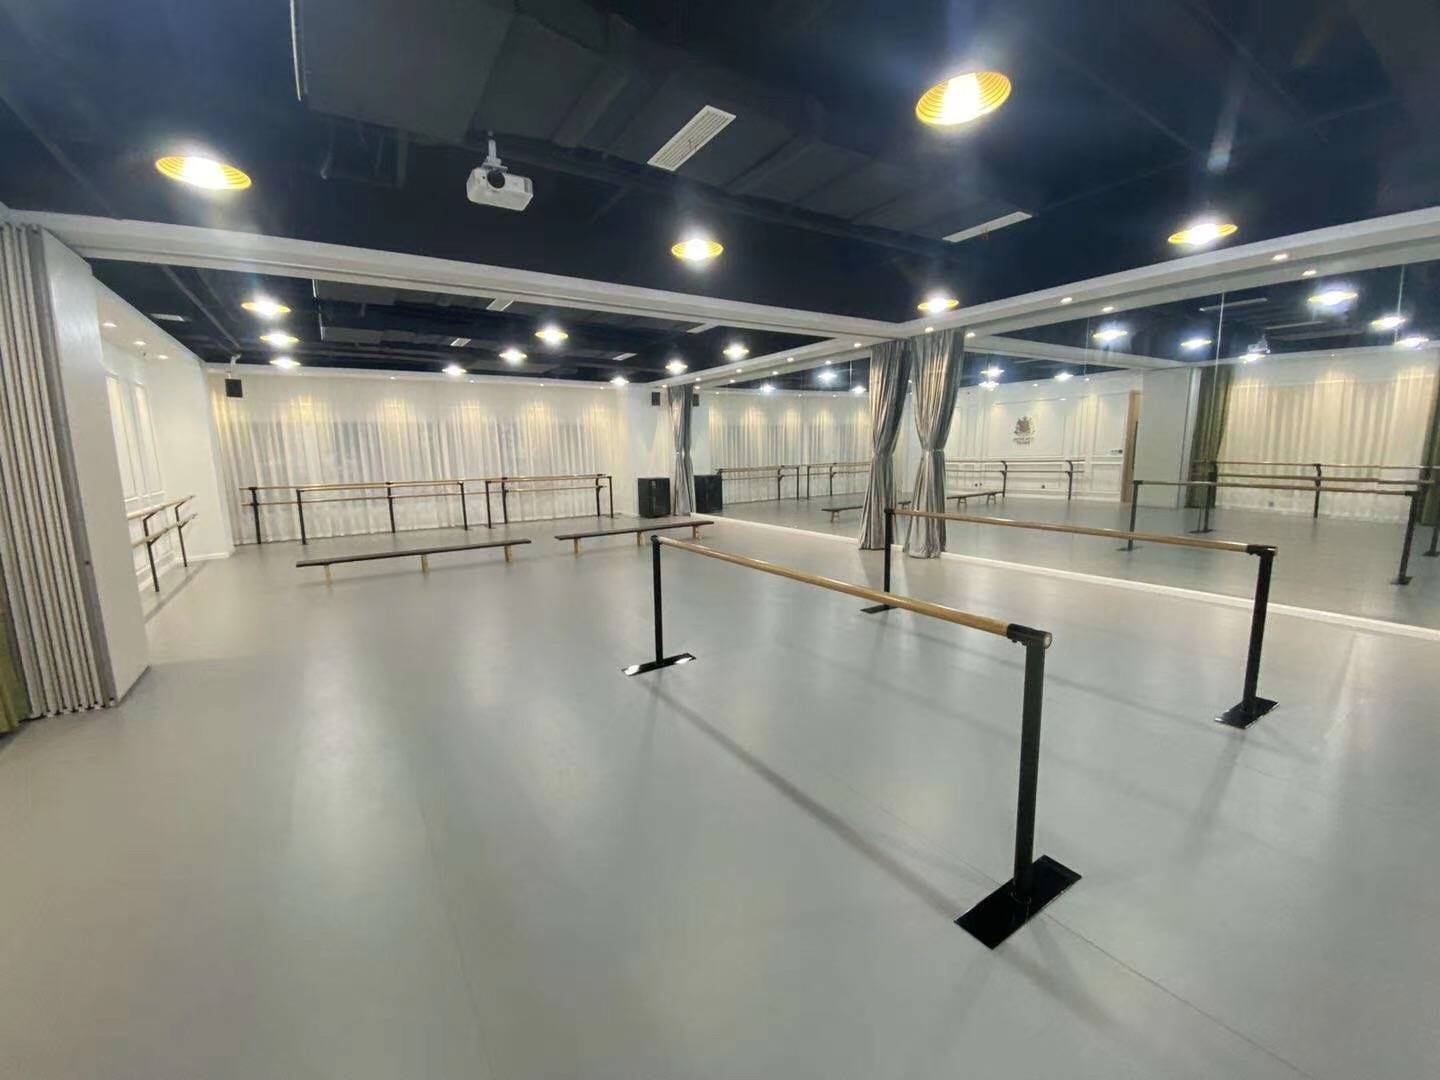 学校的舞蹈教室改造到底用什么地面材料或者地板地胶好?